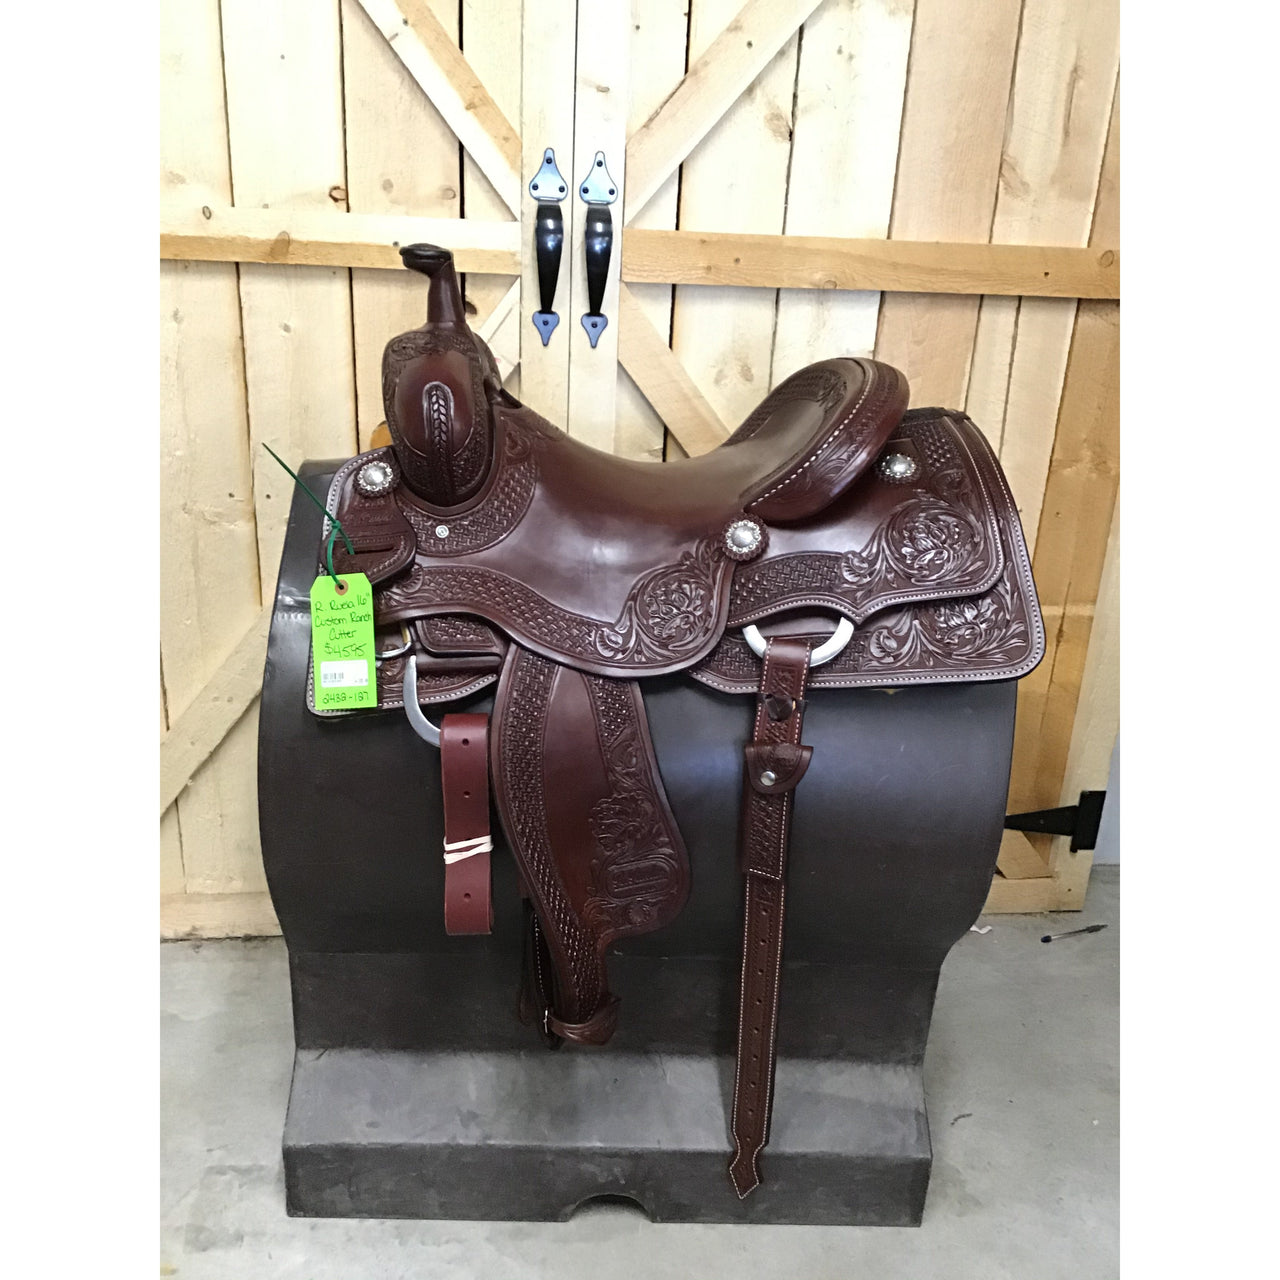 R. Ruelas 16" Custom Ranch Cutting Saddle